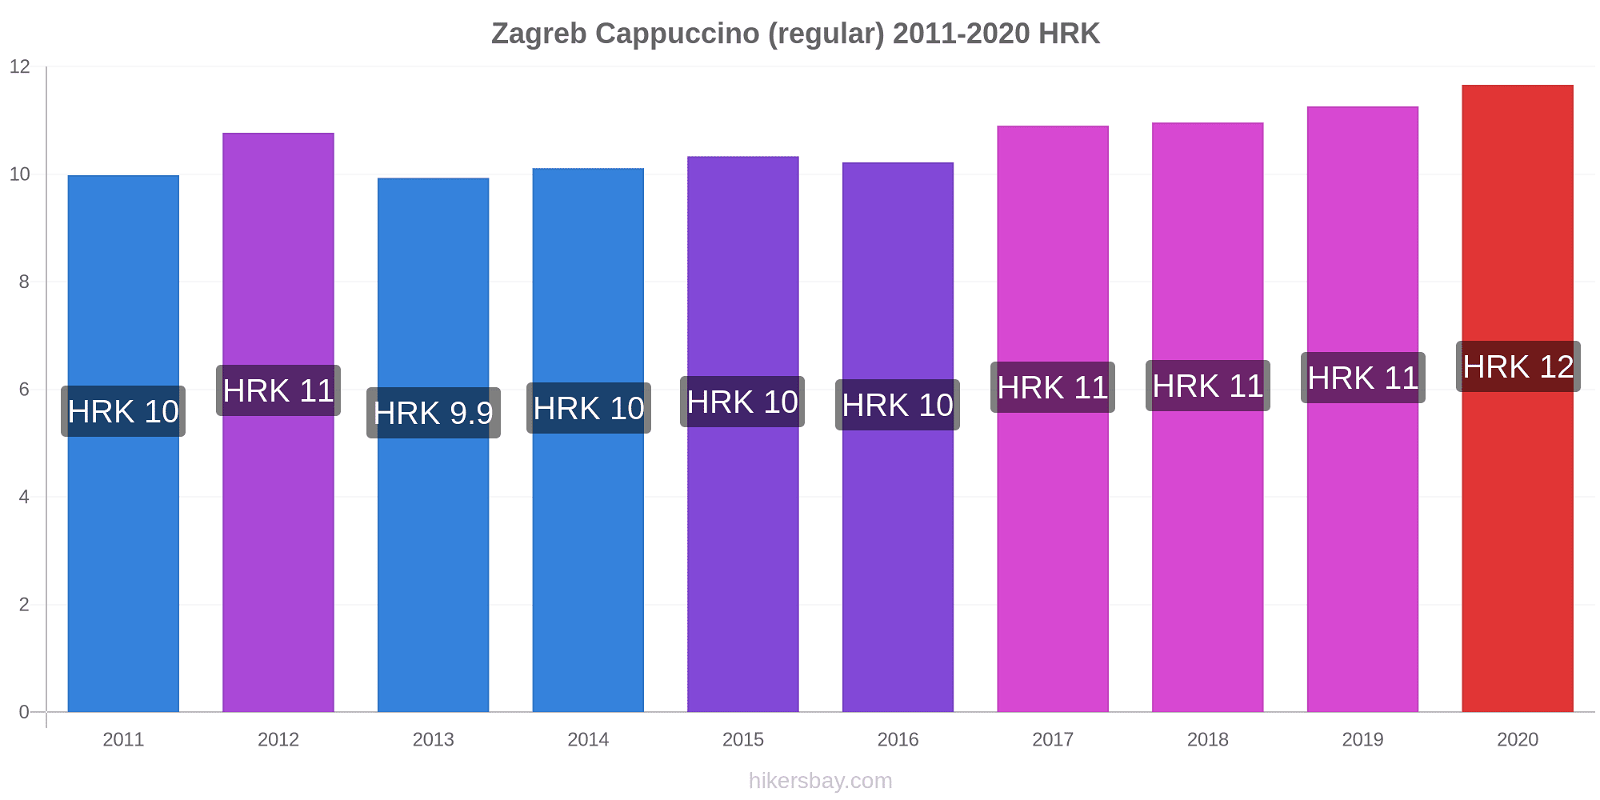 Zagreb variação de preço Capuccino (regular) hikersbay.com